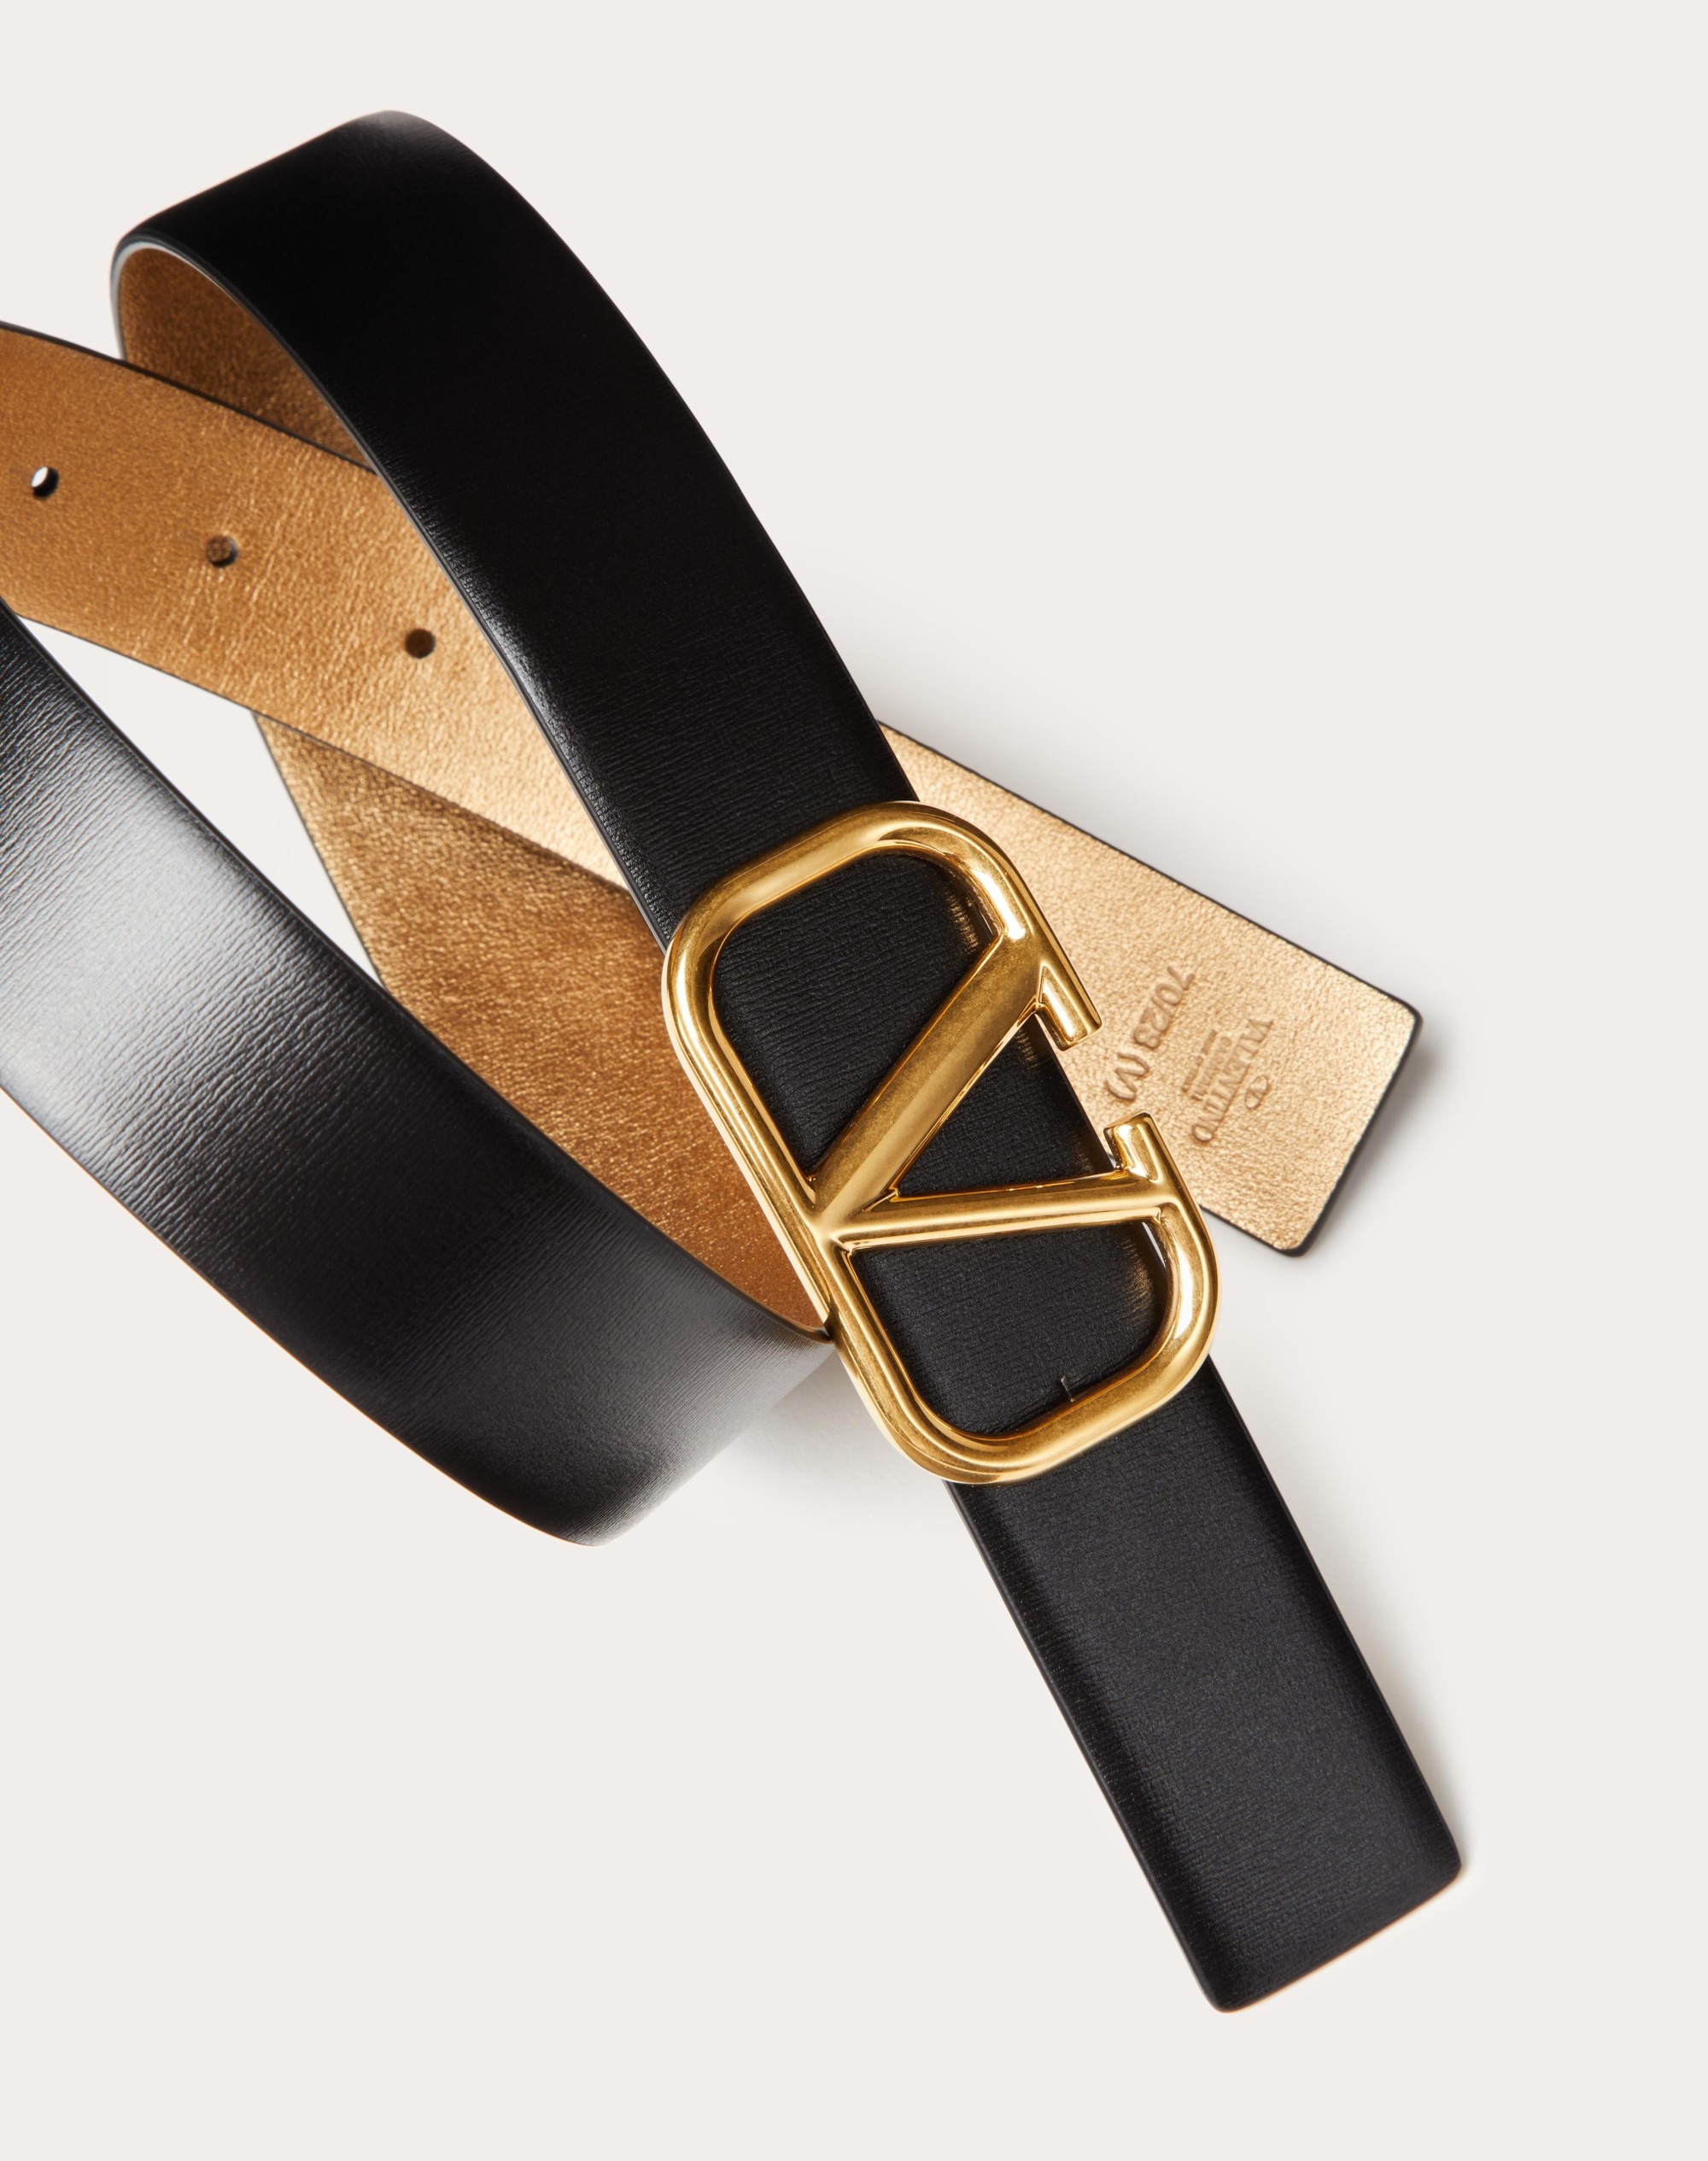 VLogo Signature 30 reversible leather belt